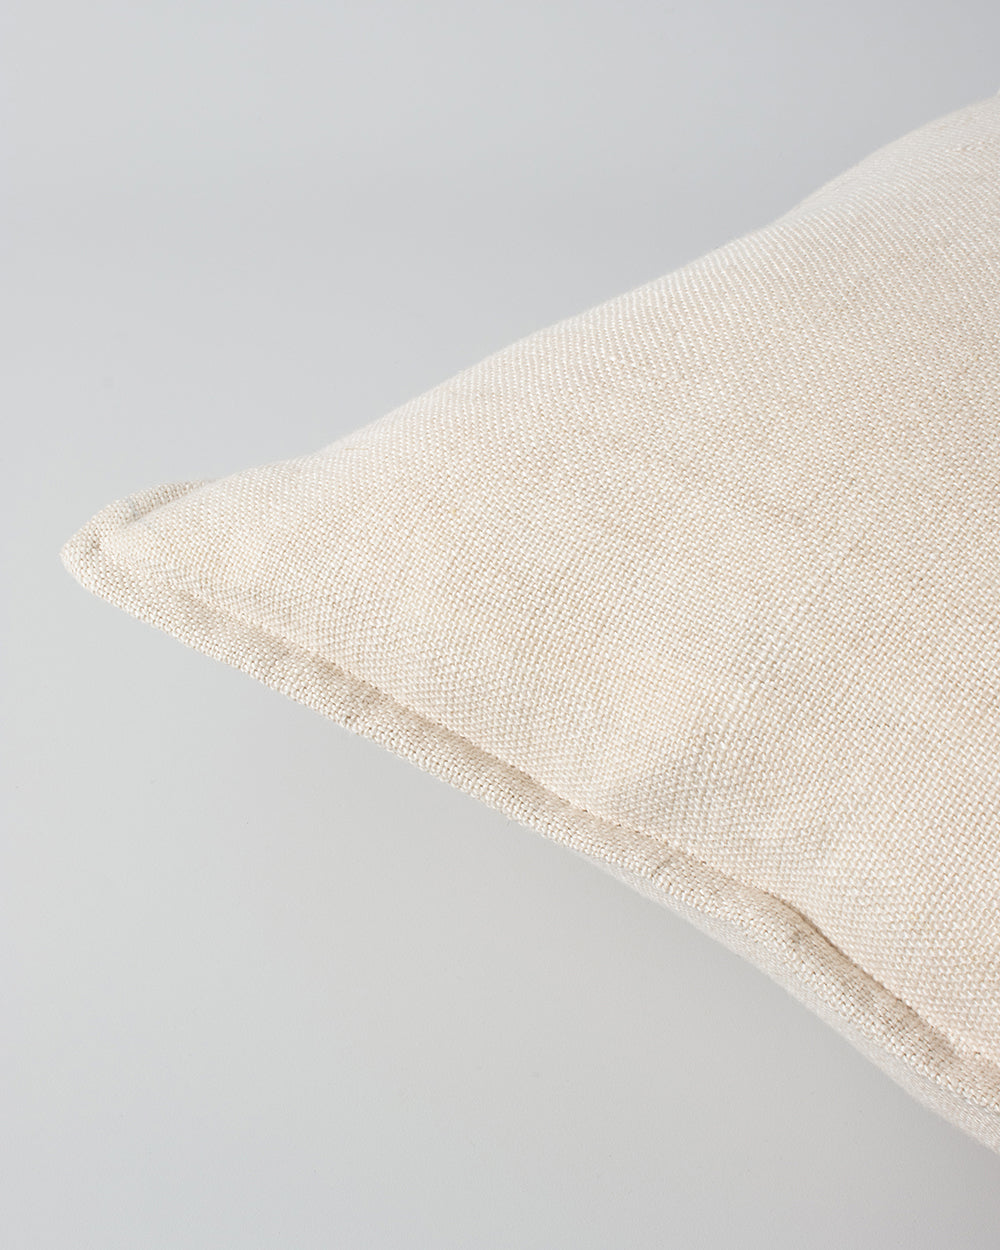 Flaxmill Linen Cushion - multiple colours